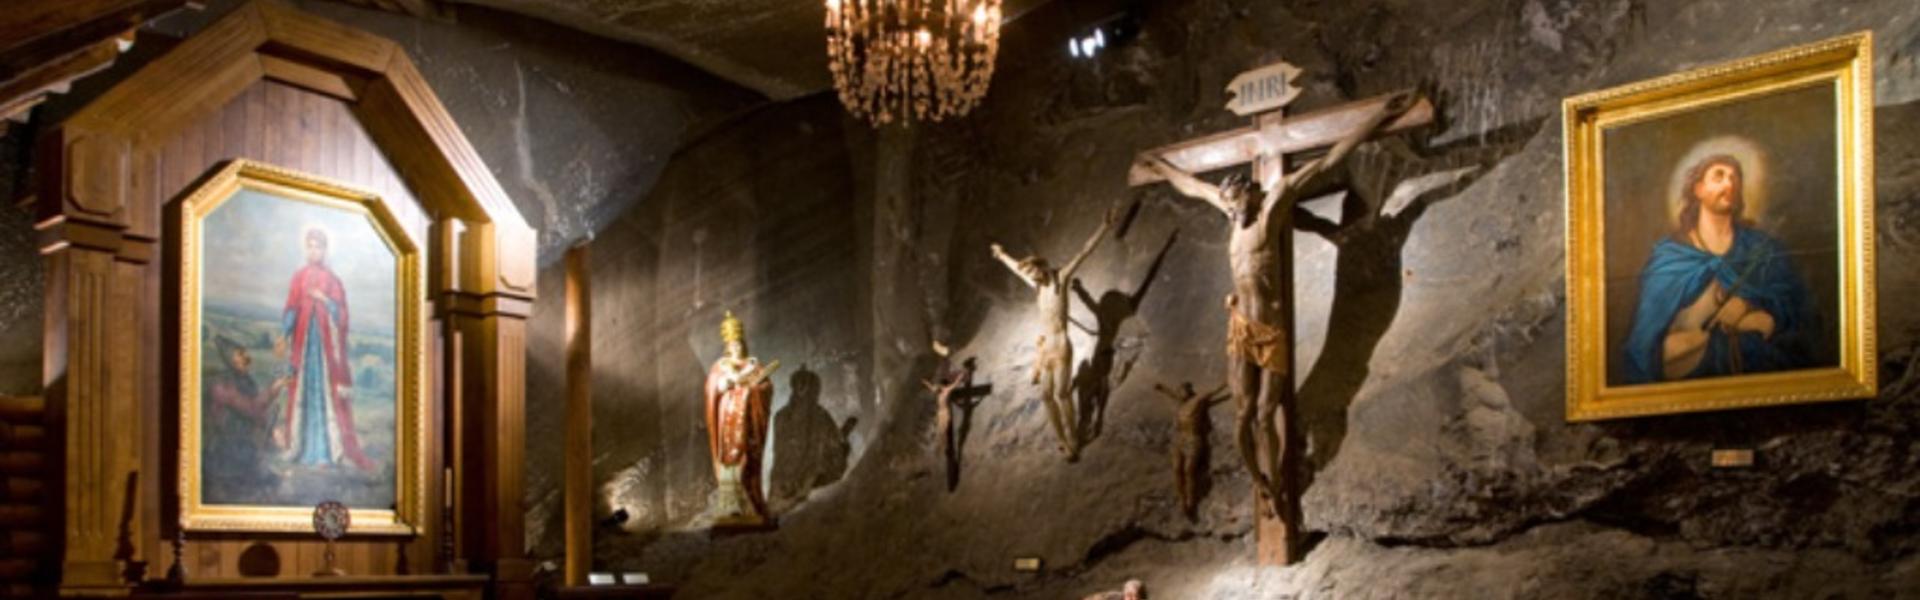 Kaplica z obrazami i krzyżami w kopalni soli.